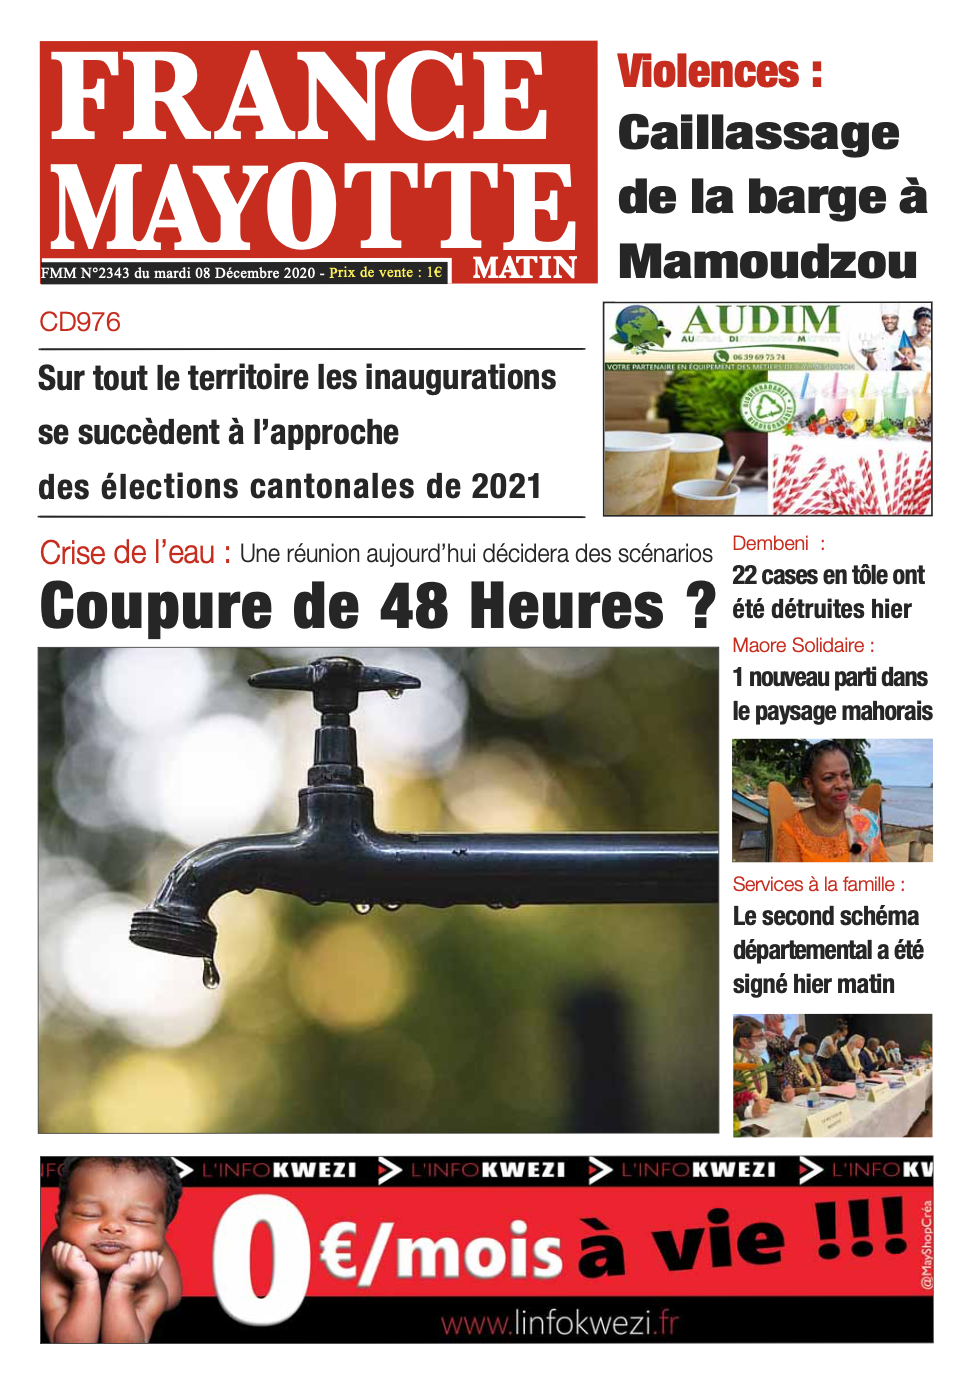 France Mayotte Mardi 8 décembre 2020